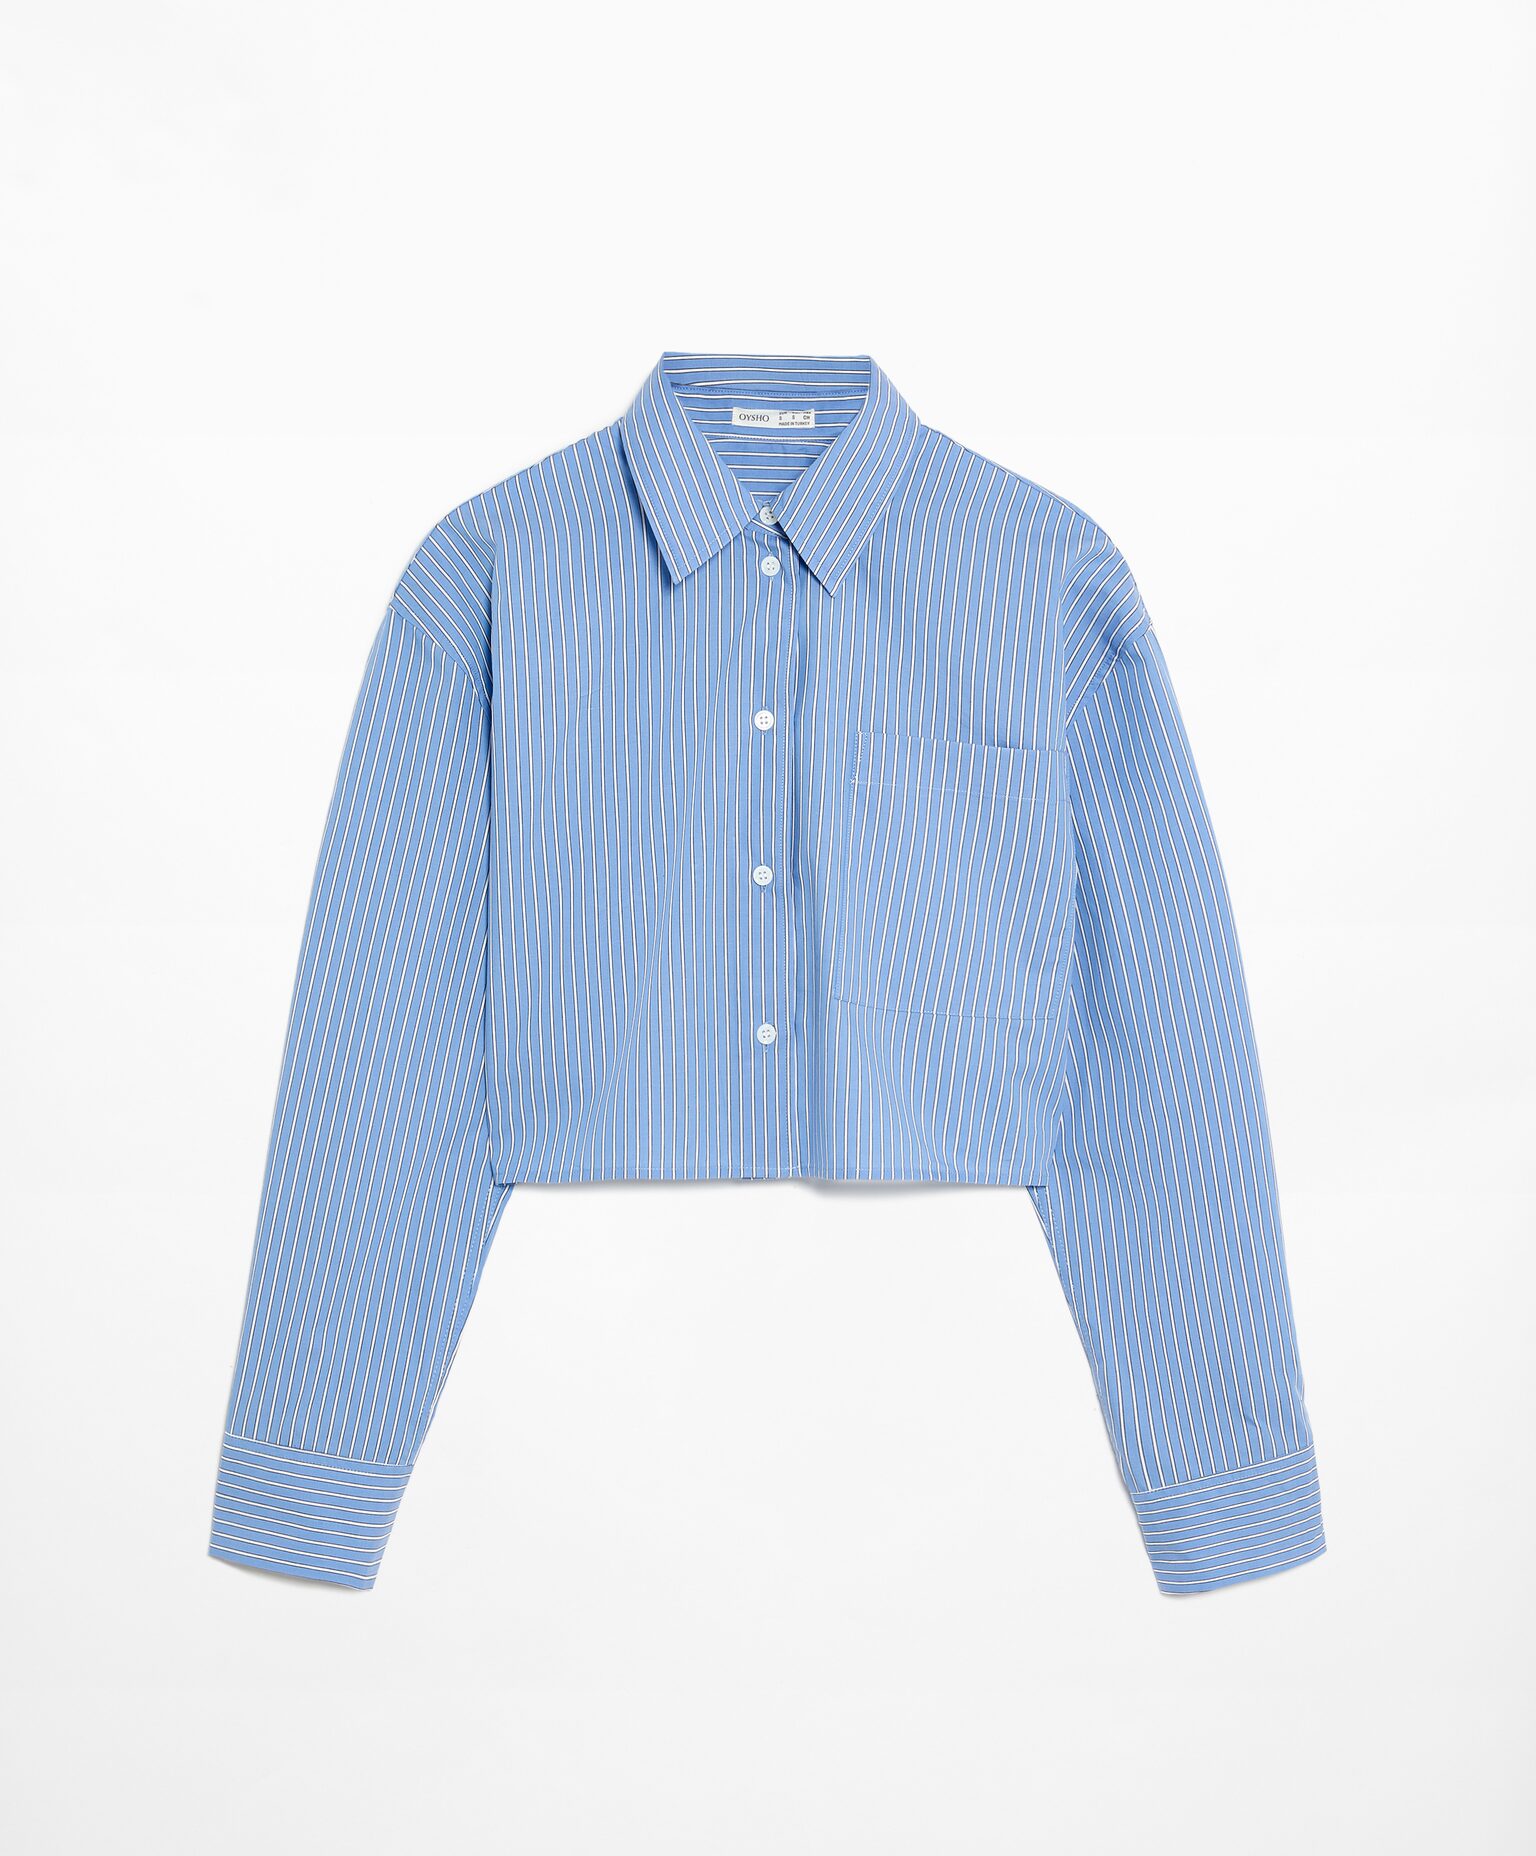 Рубашка Oysho Striped, голубой рубашка в полоску с длинными рукавами xl синий